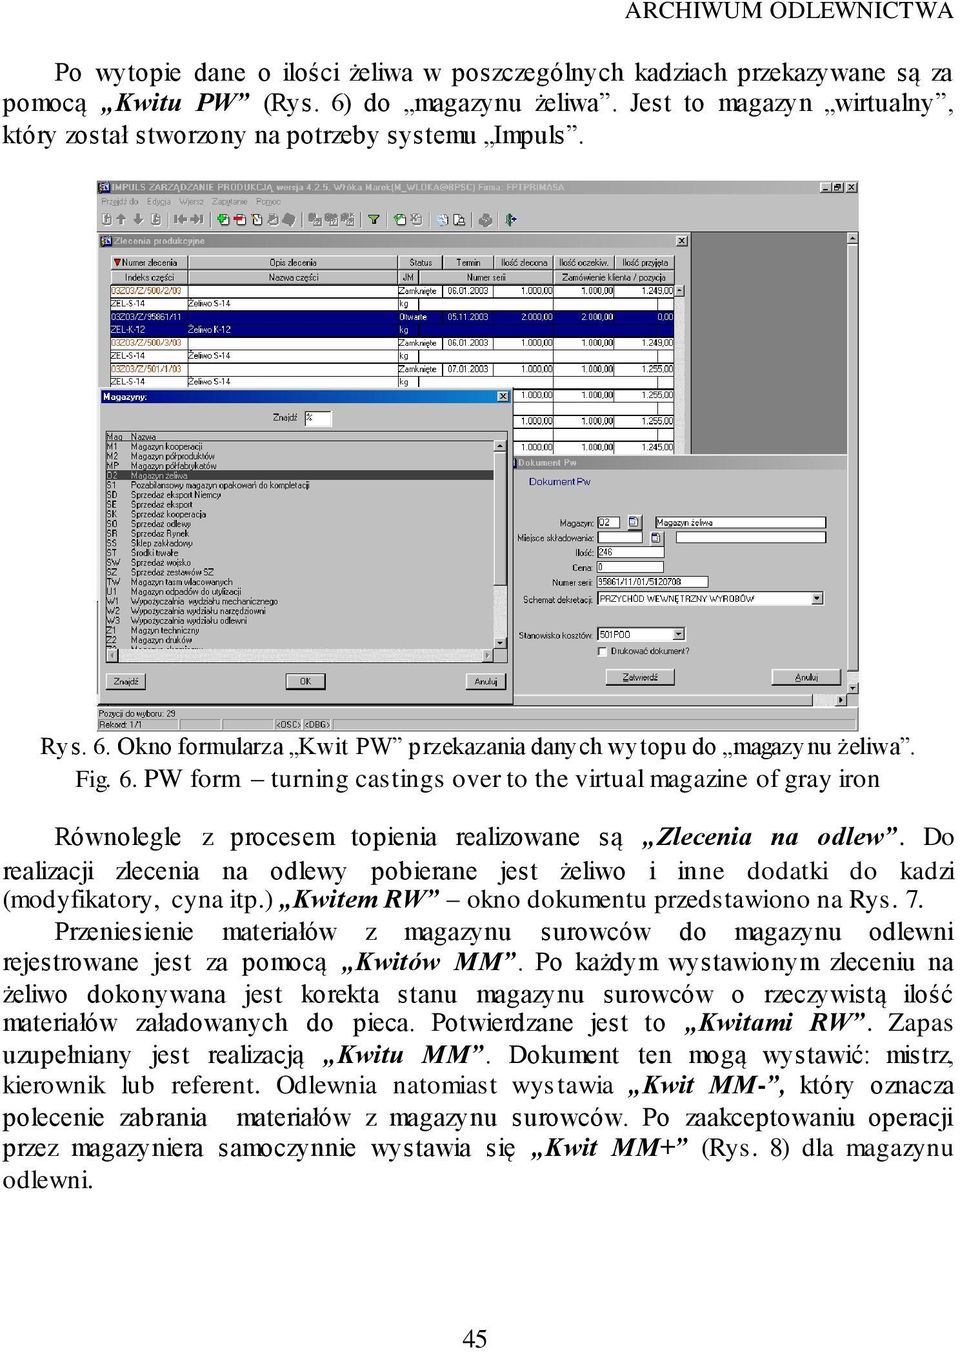 Okno formularza Kwit PW przekazania danych wytopu do magazynu żeliwa. Fig. 6.